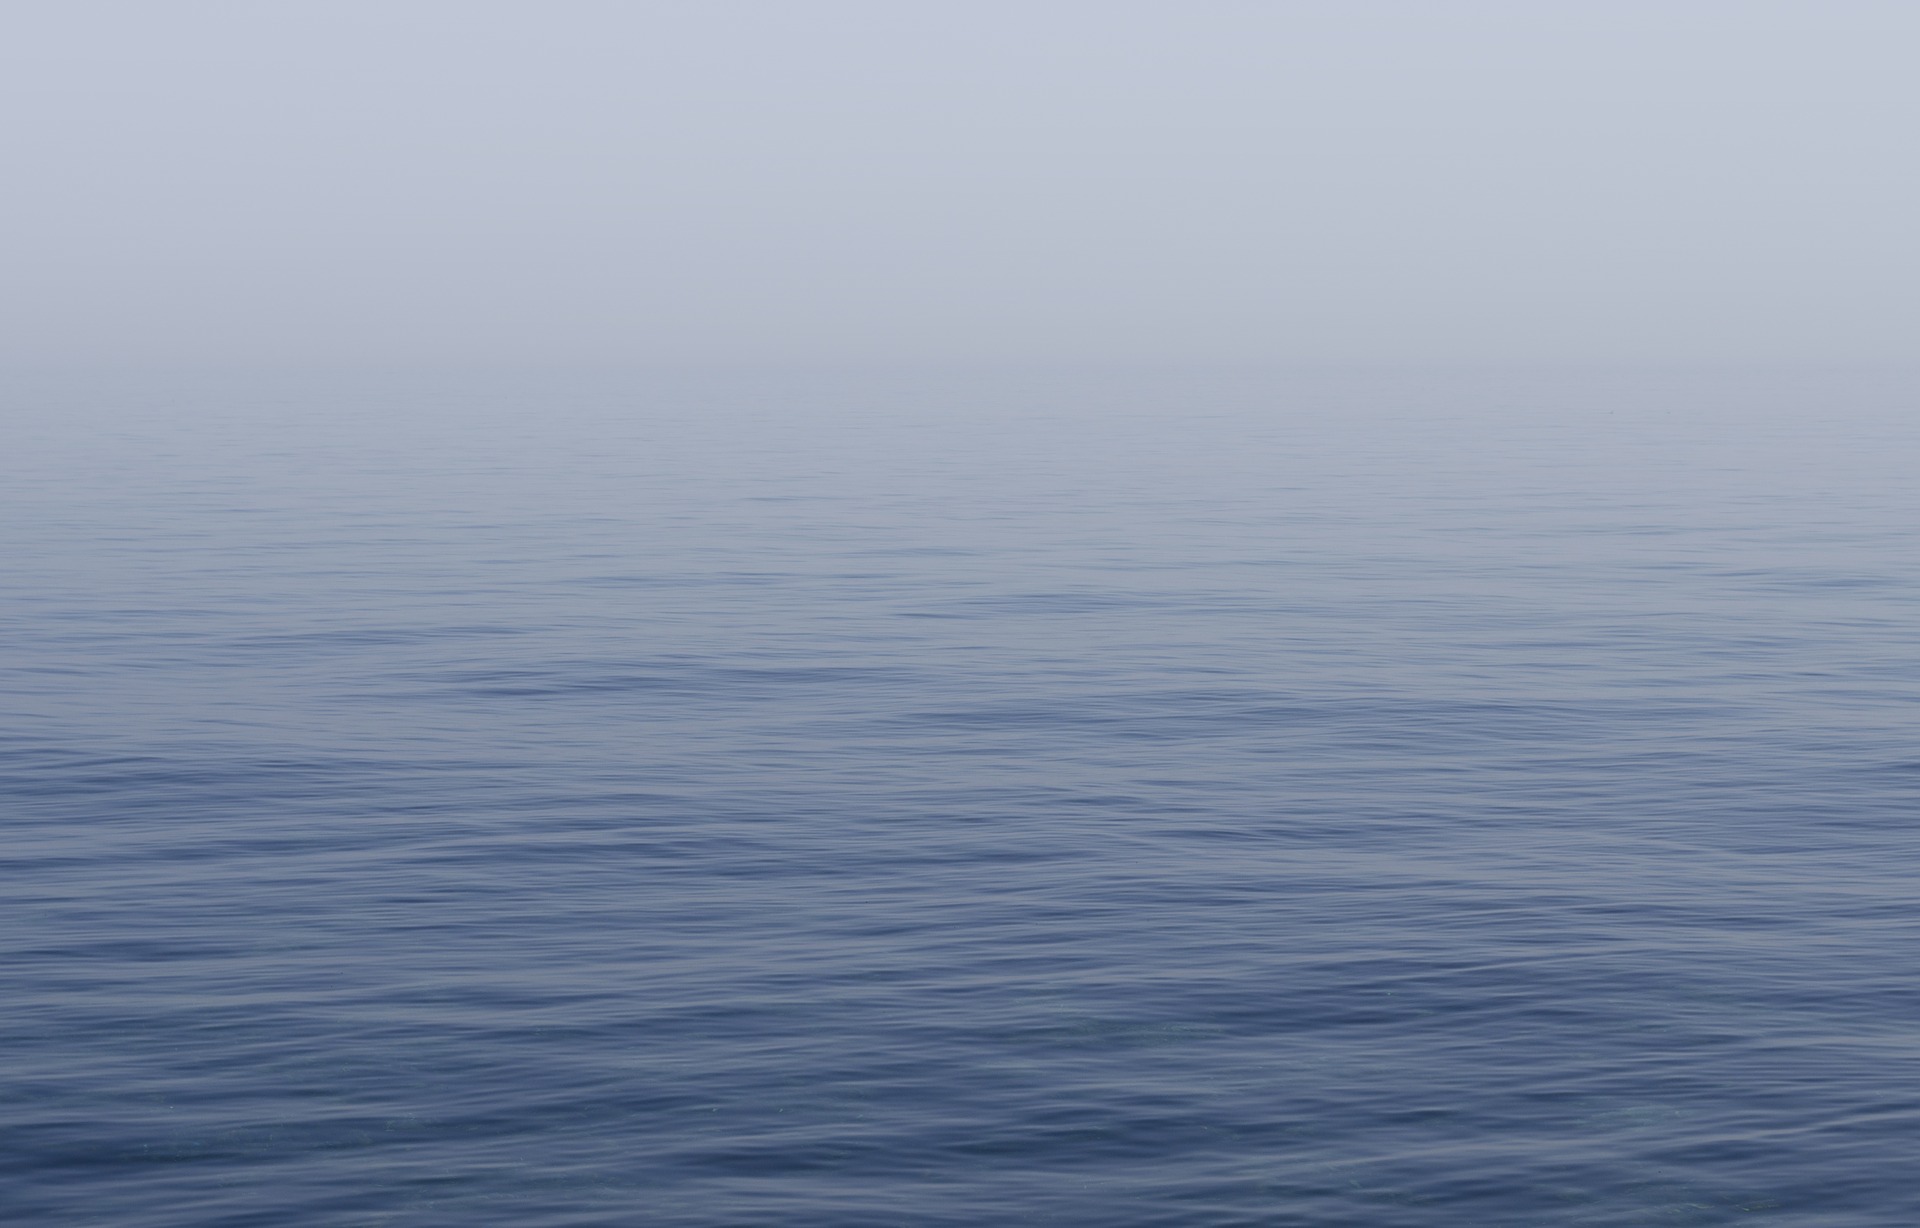 Già tre le ecoballe recuperate nel Golfo di Follonica, dalla Protezione Civile